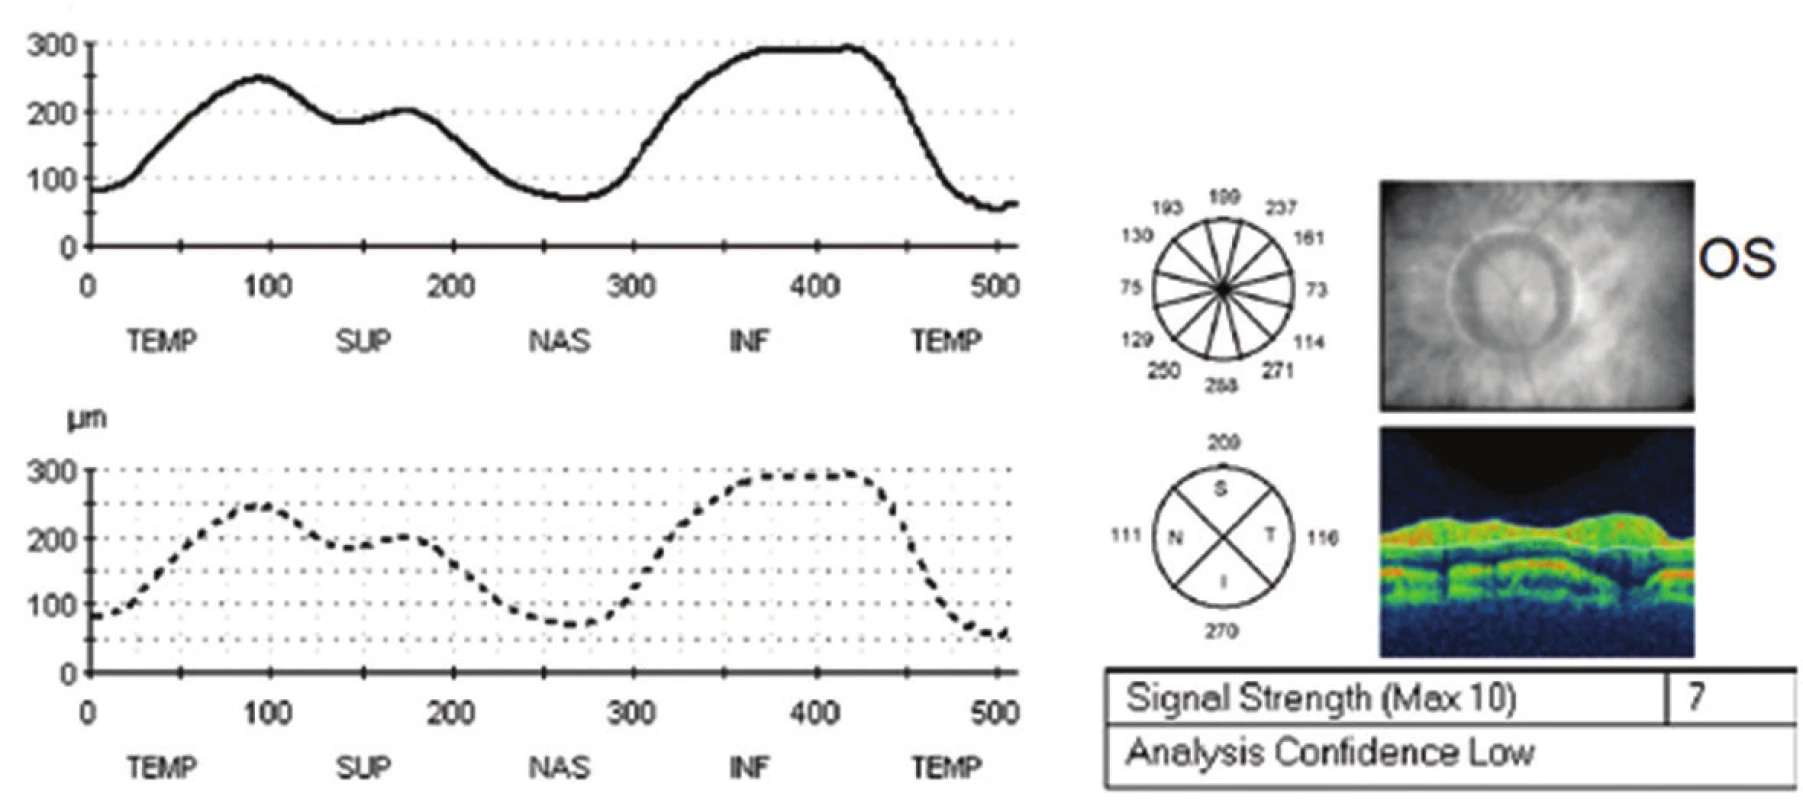 Vstupní měření vrstvy nervových vláken sítnice k monitoraci edému papily zrakového nervu původně na optické koherenšní tomografii Stratus Zeiss na levém oku